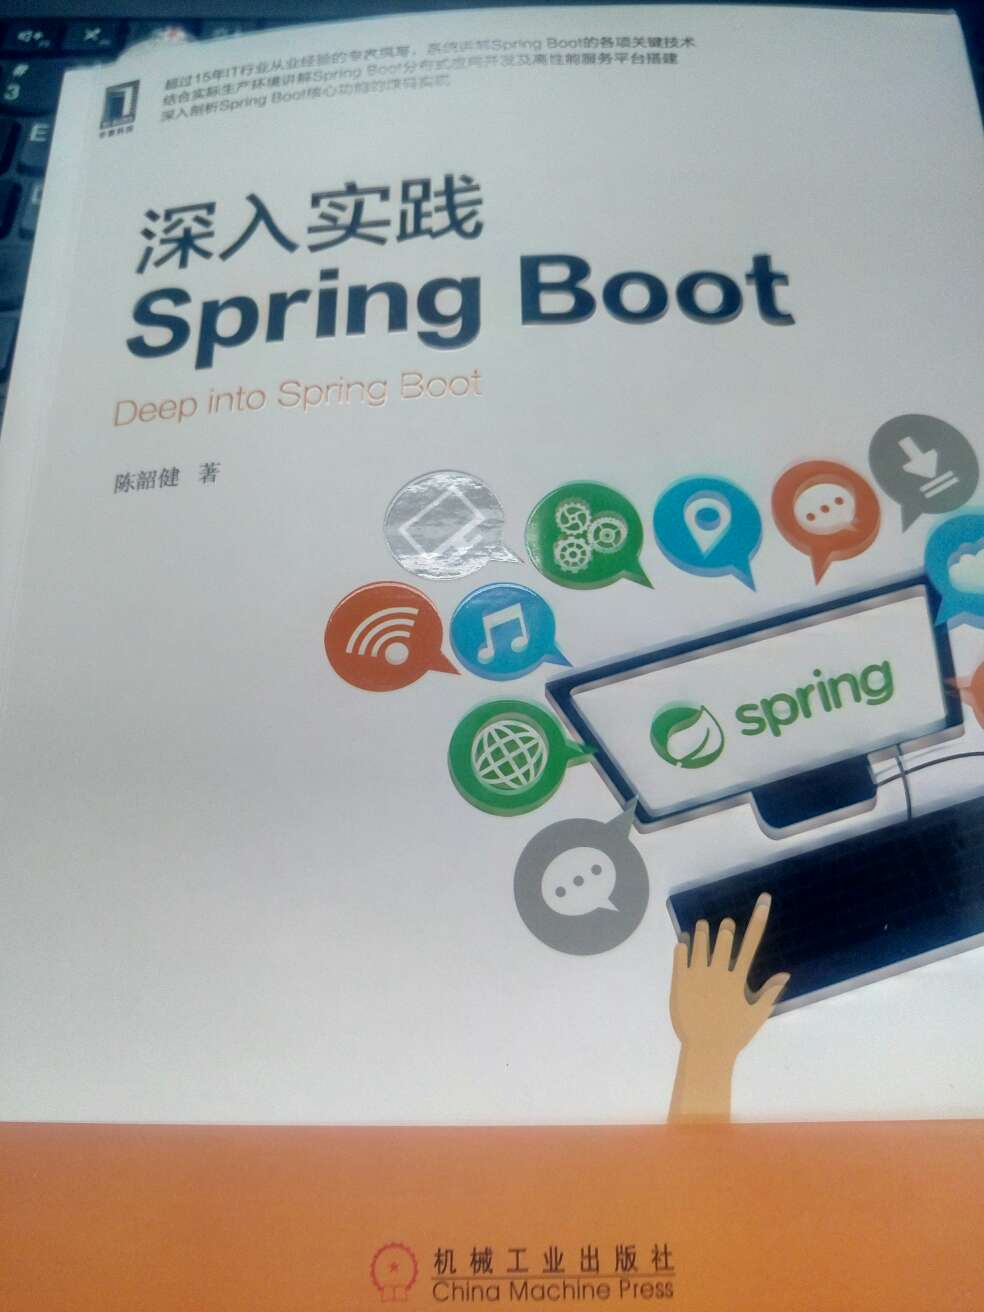 正好要学习Springboot，此书从基础开始讲解，通俗易懂，可以作为入门级书籍